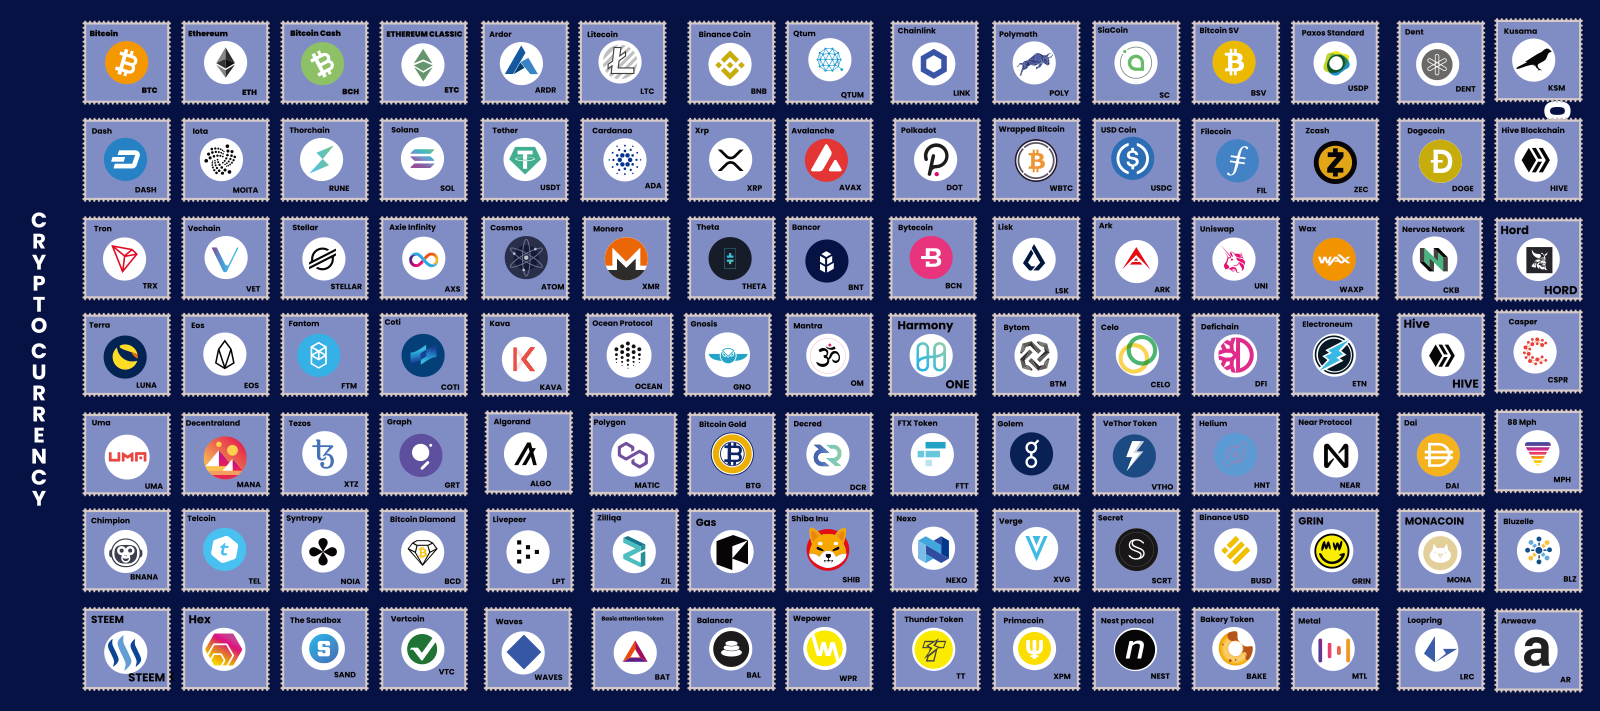 100以上の暗号通貨のロゴを並べてみました